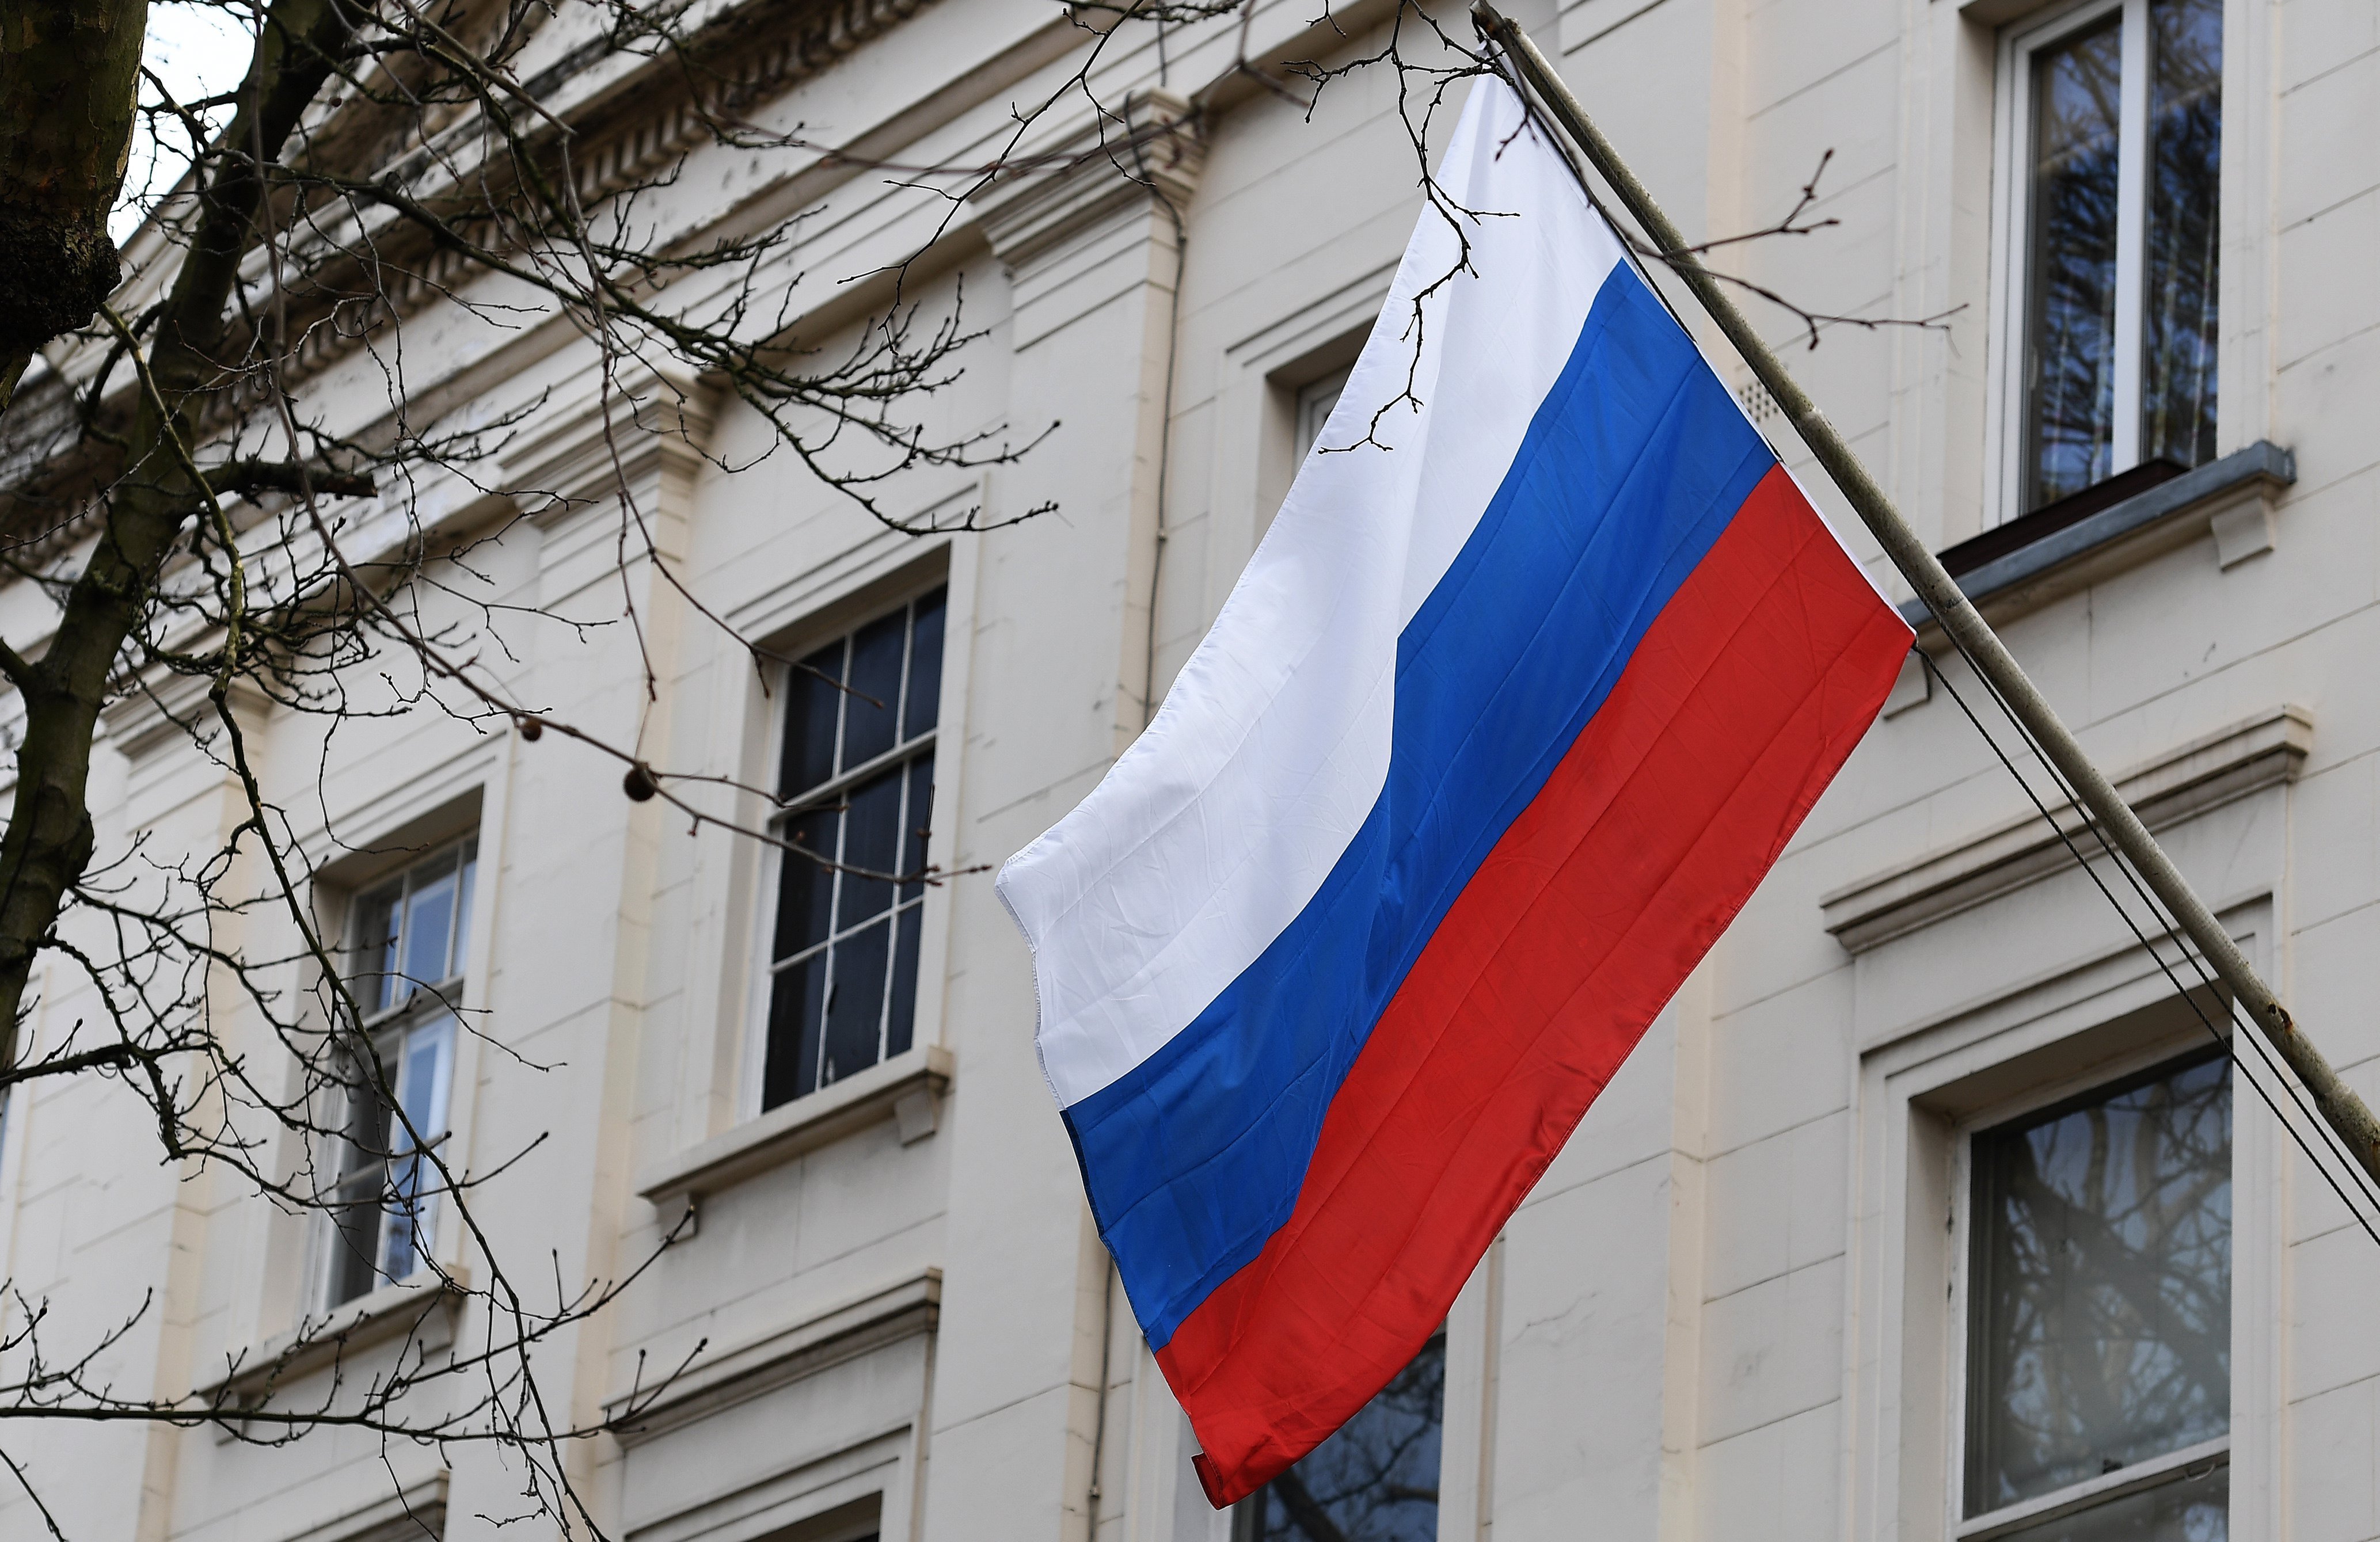 London, 2018. március 14. Az orosz konzulátus épülete Londonban 2018. március 14-én. Theresa May brit miniszterelnök bejelentette, hogy a brit kormány kiutasít 23 olyan orosz diplomatát, akikről megállapította, hogy hírszerzési tevékenységet folytatnak Nagy-Britanniában, és felfüggeszt minden magas szintű diplomáciai érintkezést Oroszországgal. Az intézkedések előzménye az angliai Salisbury városában idegméreggel elkövetett gyilkossági kísérlet, amelynek célpontja Szergej Szkripal, a brit külső hírszerzés (MI6) volt orosz ügynöke, az orosz katonai hírszerzés egykori ezredese és lánya, Julija Szkripal volt. (MTI/EPA/Andy Rain)